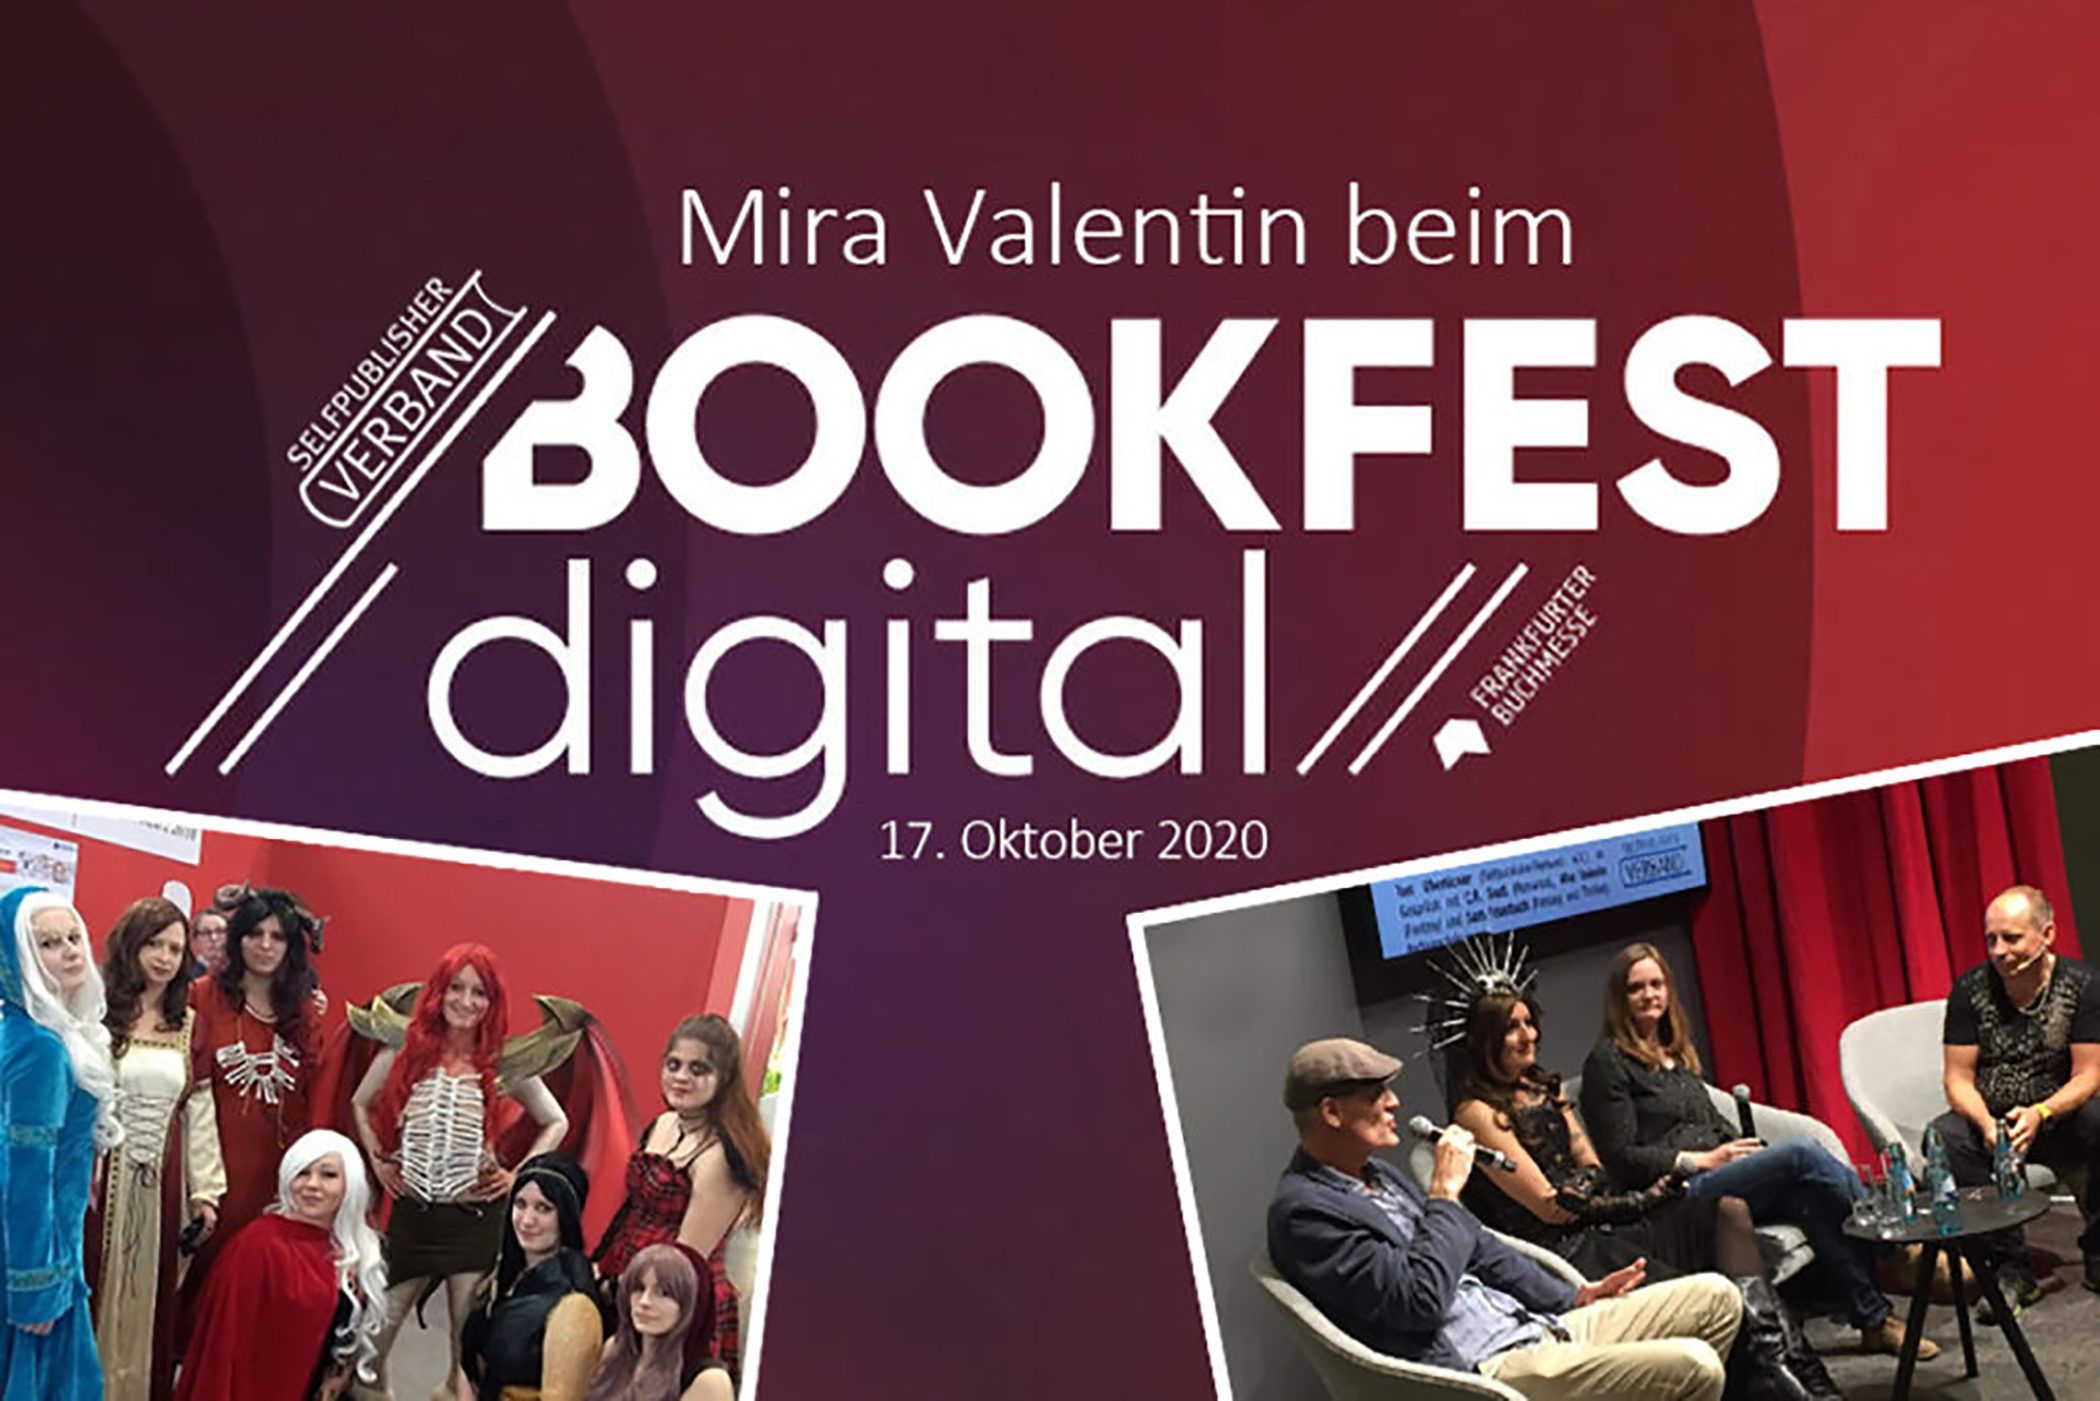 Bookfest-digital-mit-Mira-Valentin